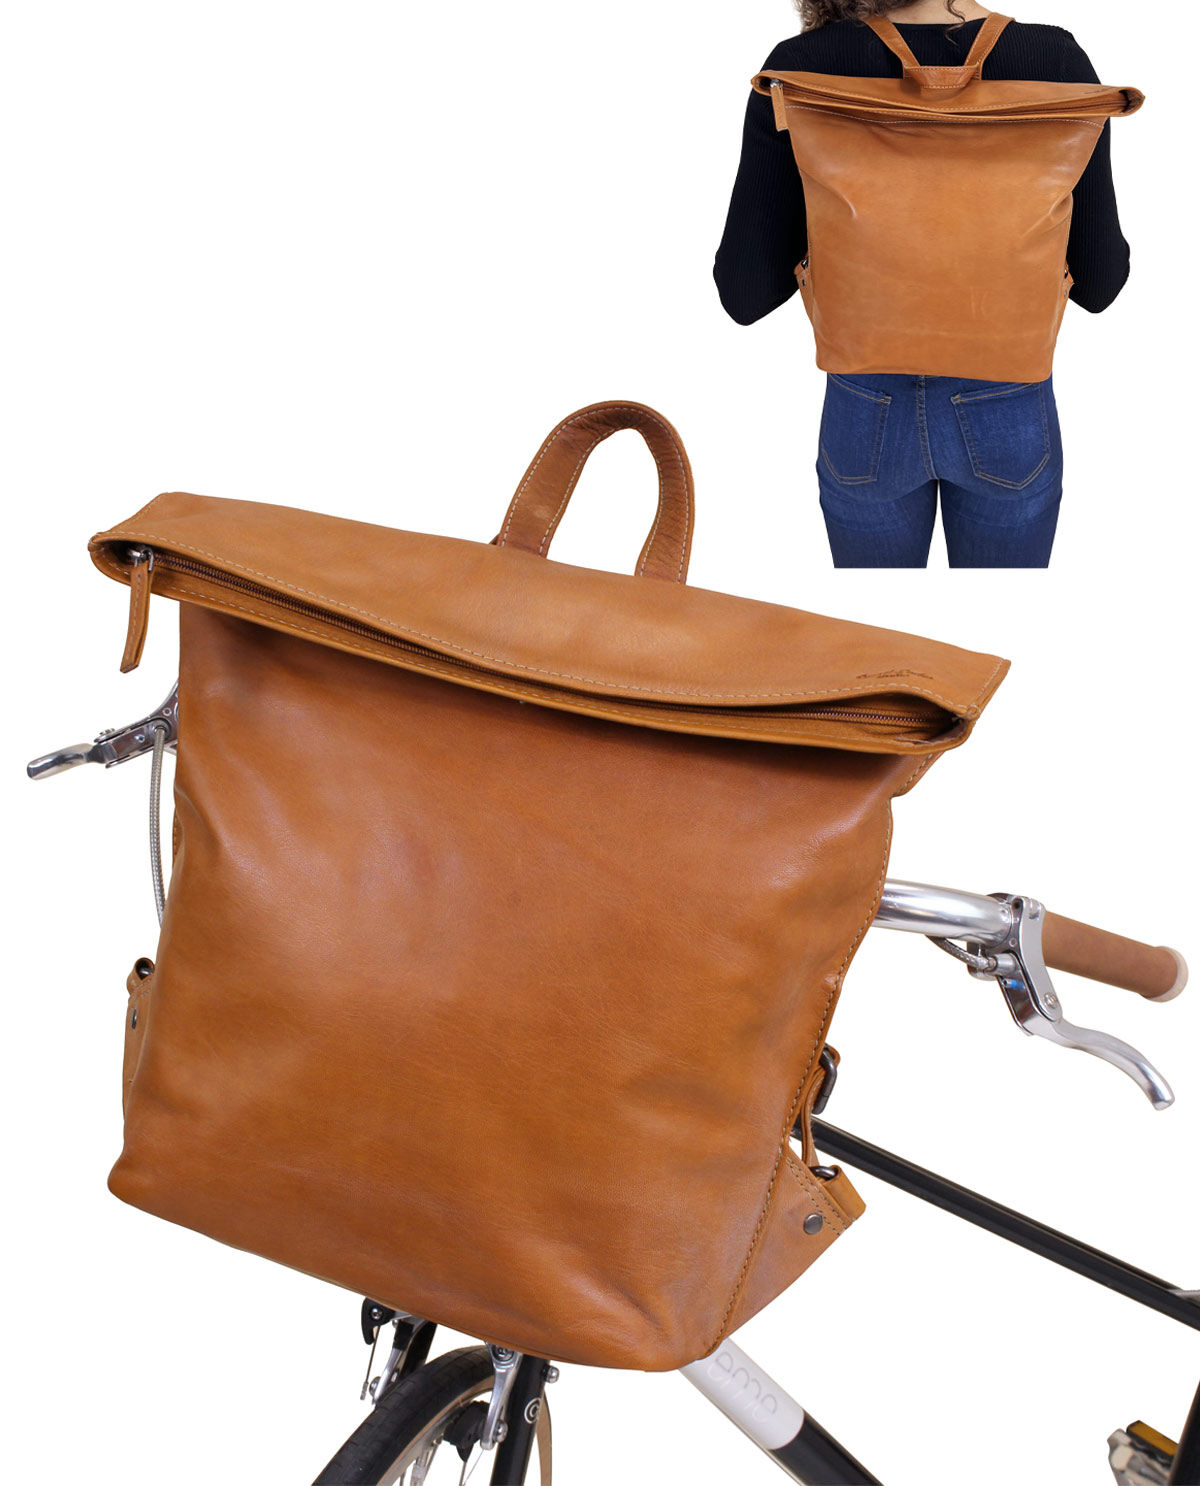 国産原料100% Gusti Leder Studio "Alena" daypack, leather backpack, 28 cm, leather, city black, 2M39-20-6wp 並行輸入品 - - www.ssciindia.com